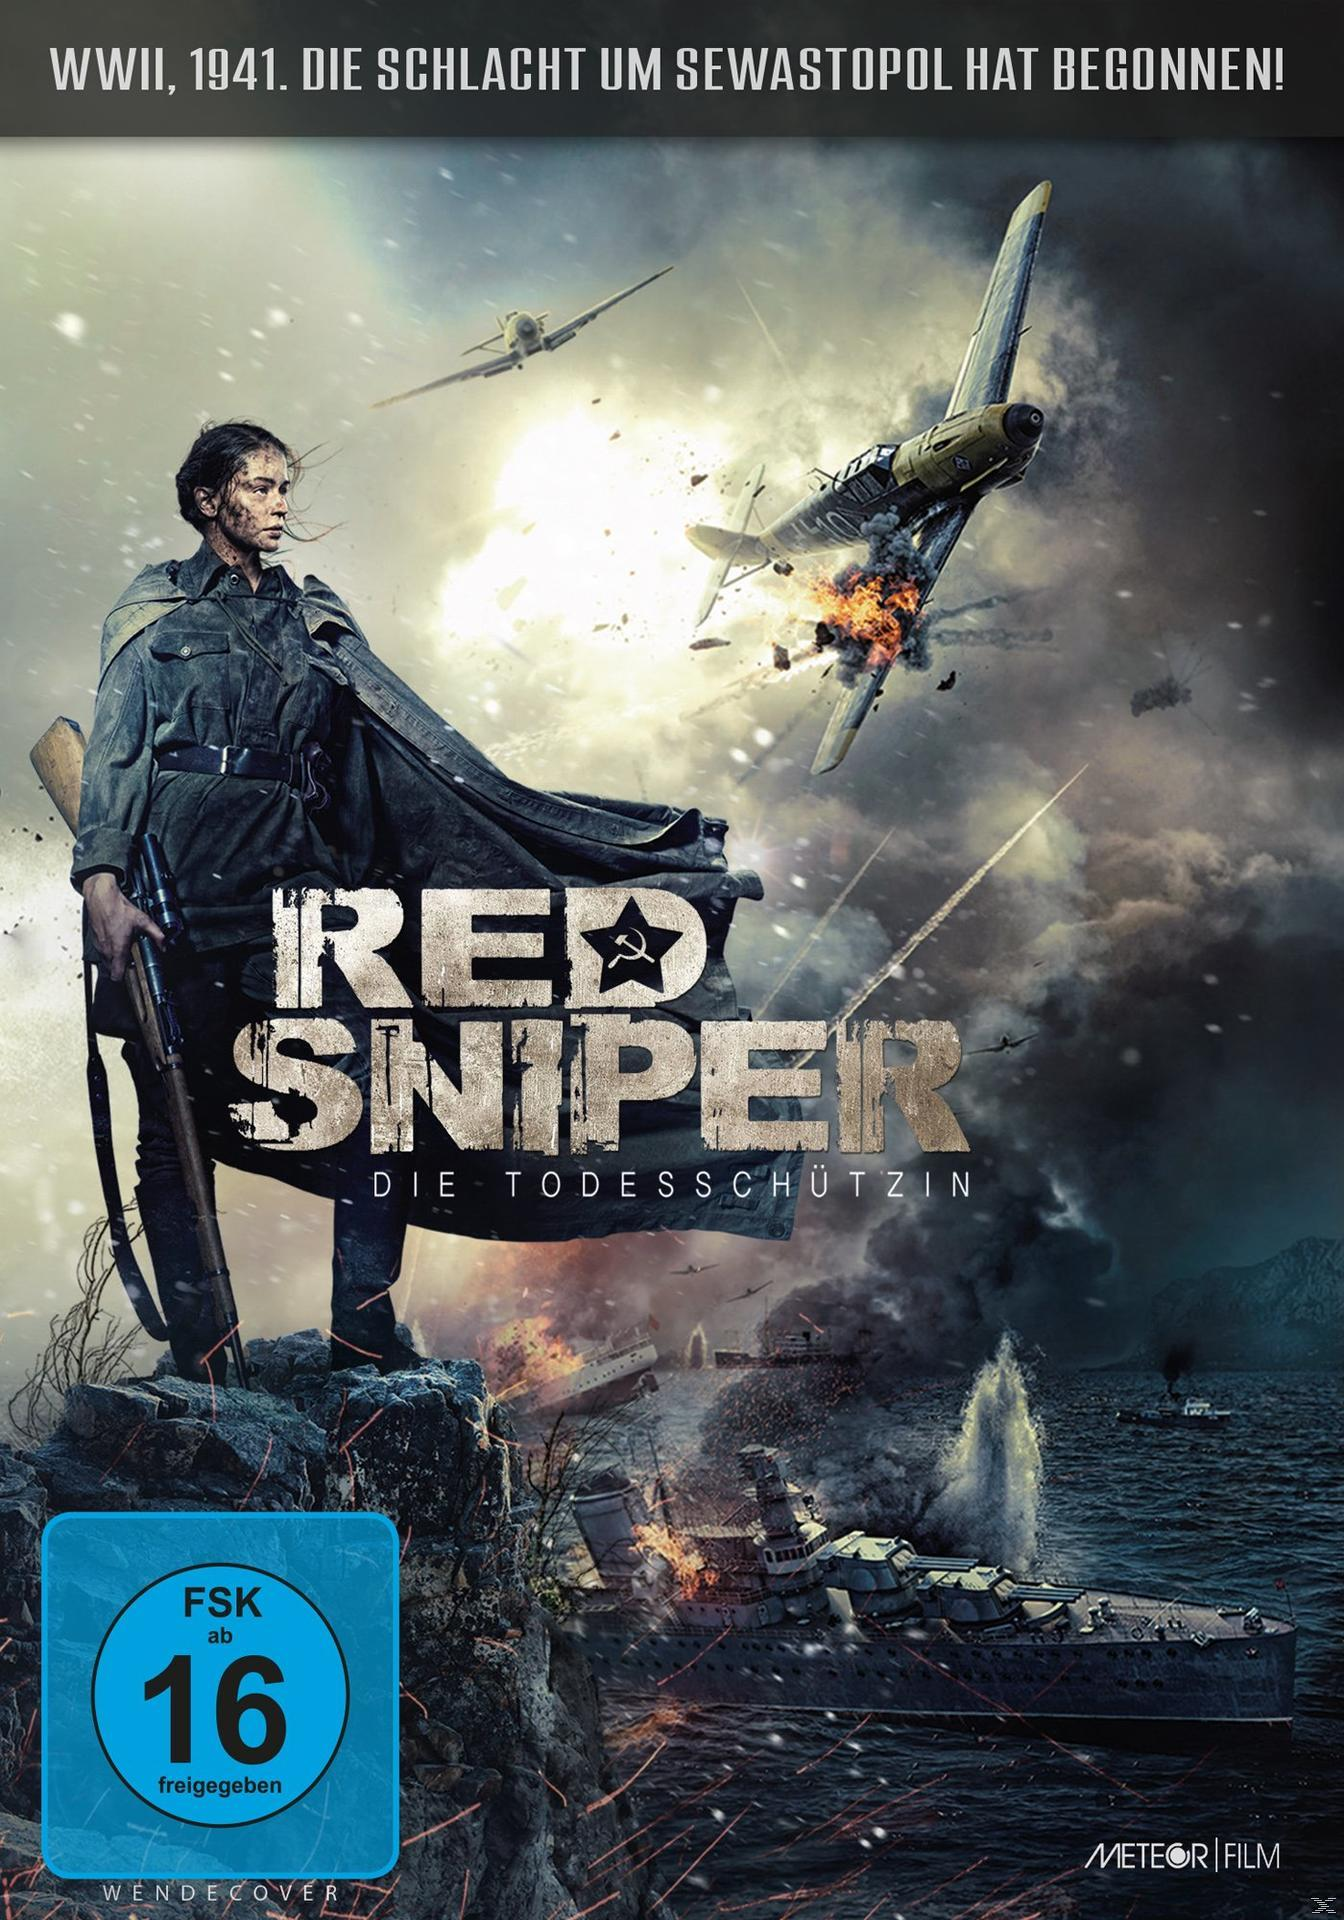 Die Todesschützin Sniper DVD - Red